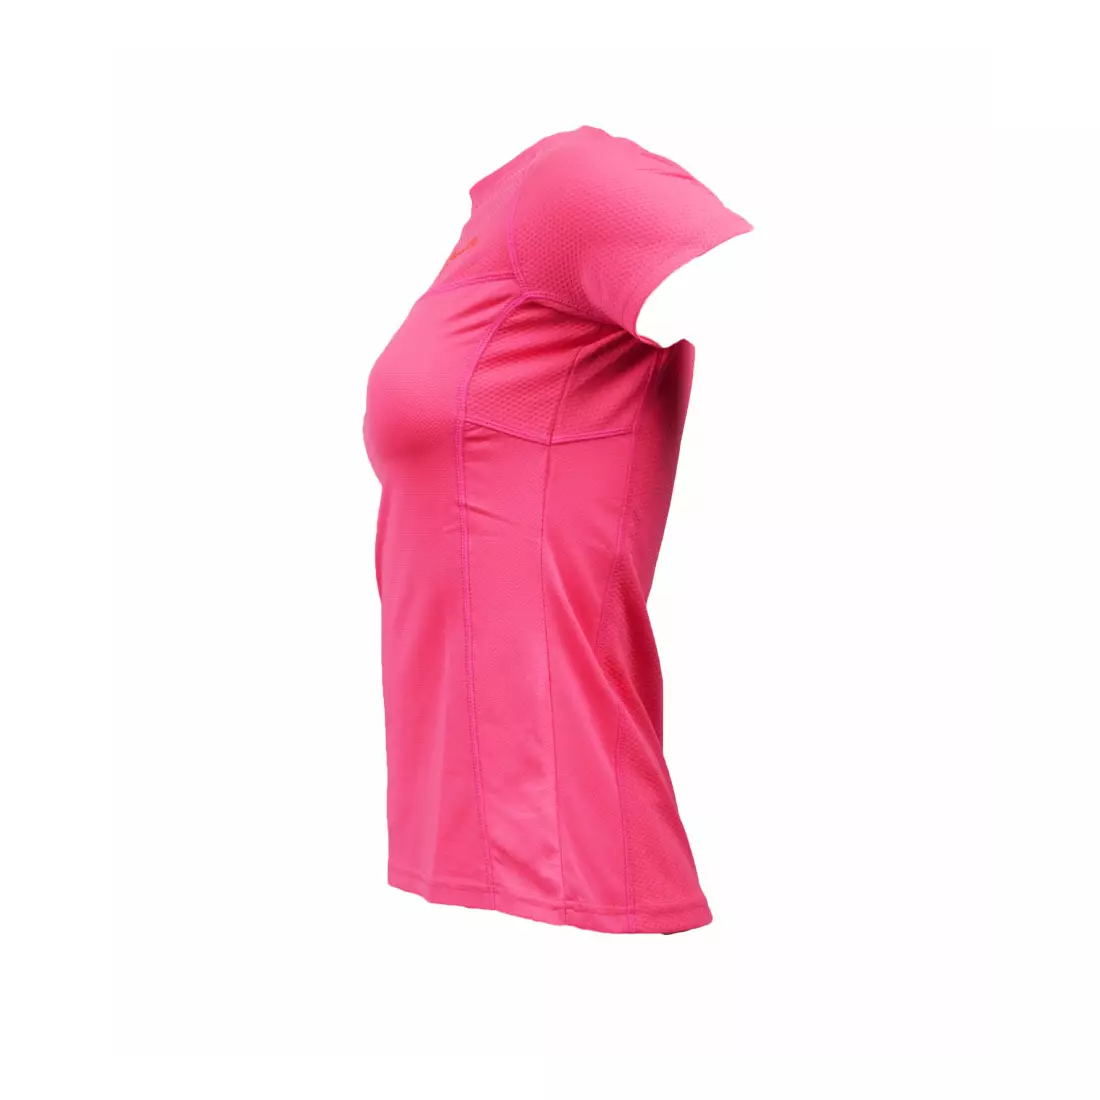 ROGELLI RUN SIRA - dámske bežecké tričko - farba: Fluórovo ružová